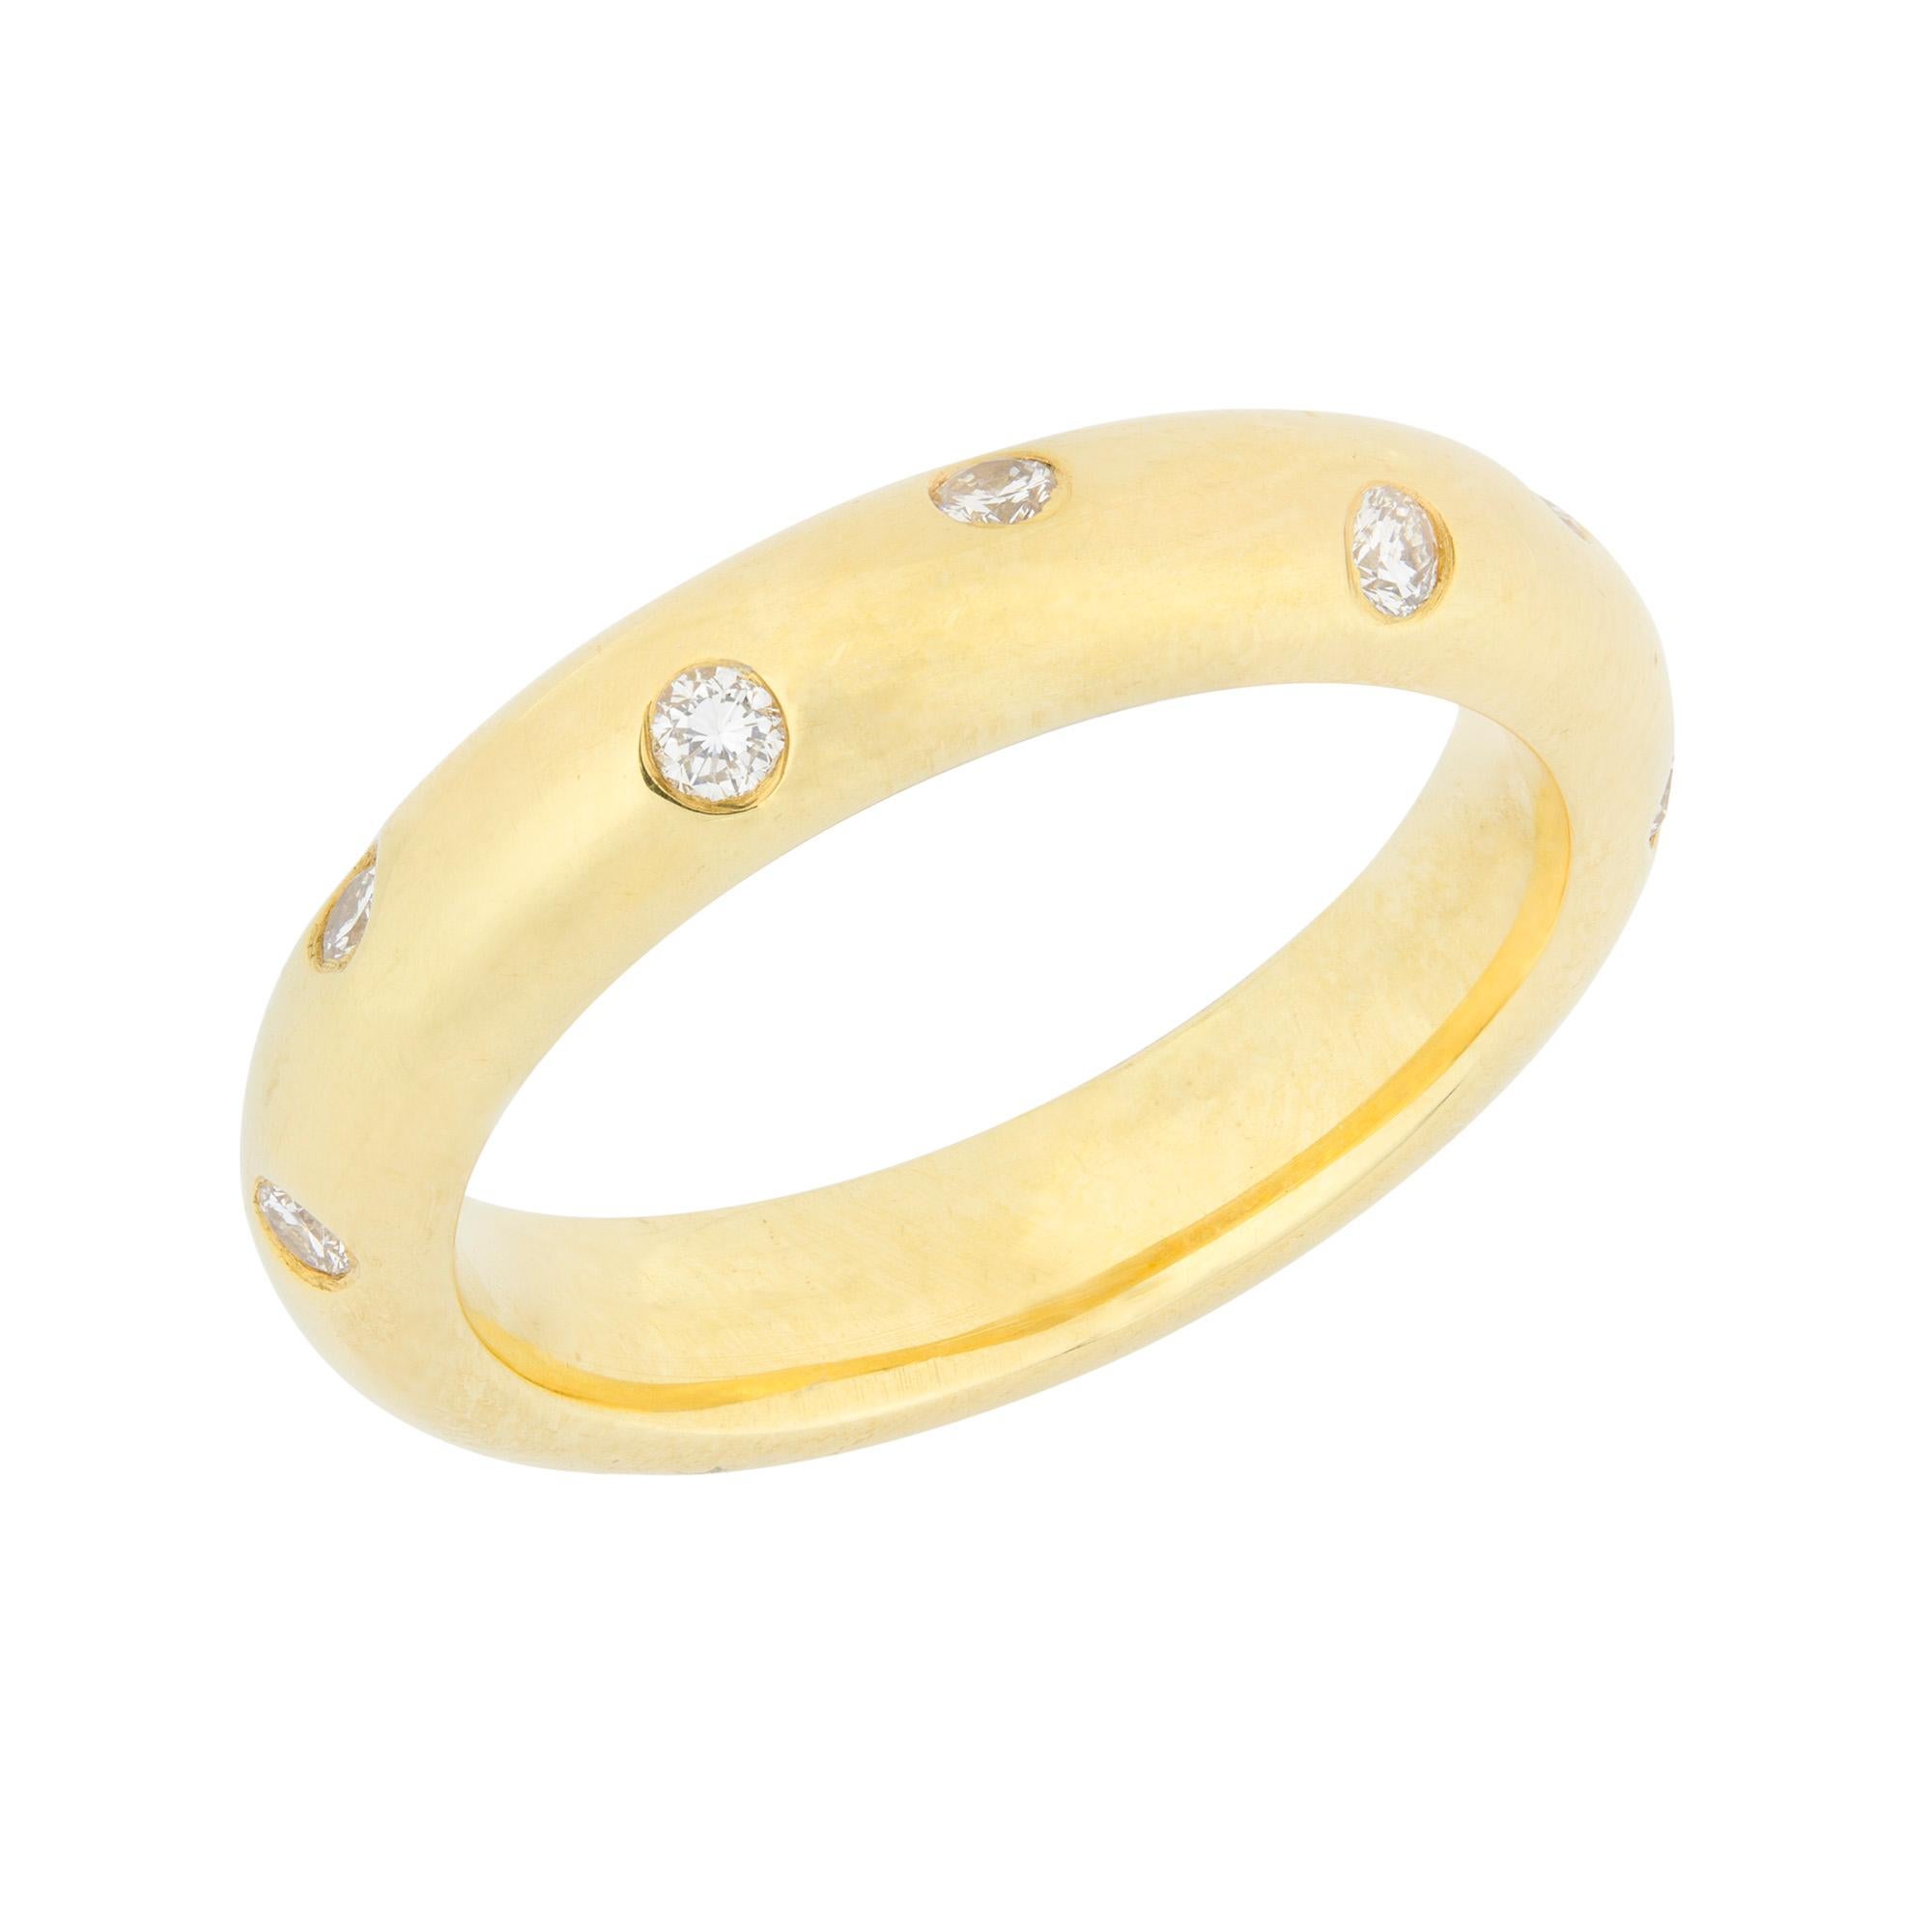 Une alliance sertie de diamants, l'anneau en or jaune de section D mesurant 4,1 mm de largeur, serti de douze diamants ronds de taille brillant, poinçonné en or 18 carats, Londres 2001, portant la marque du sponsor LW&G, taille de doigt M, poids